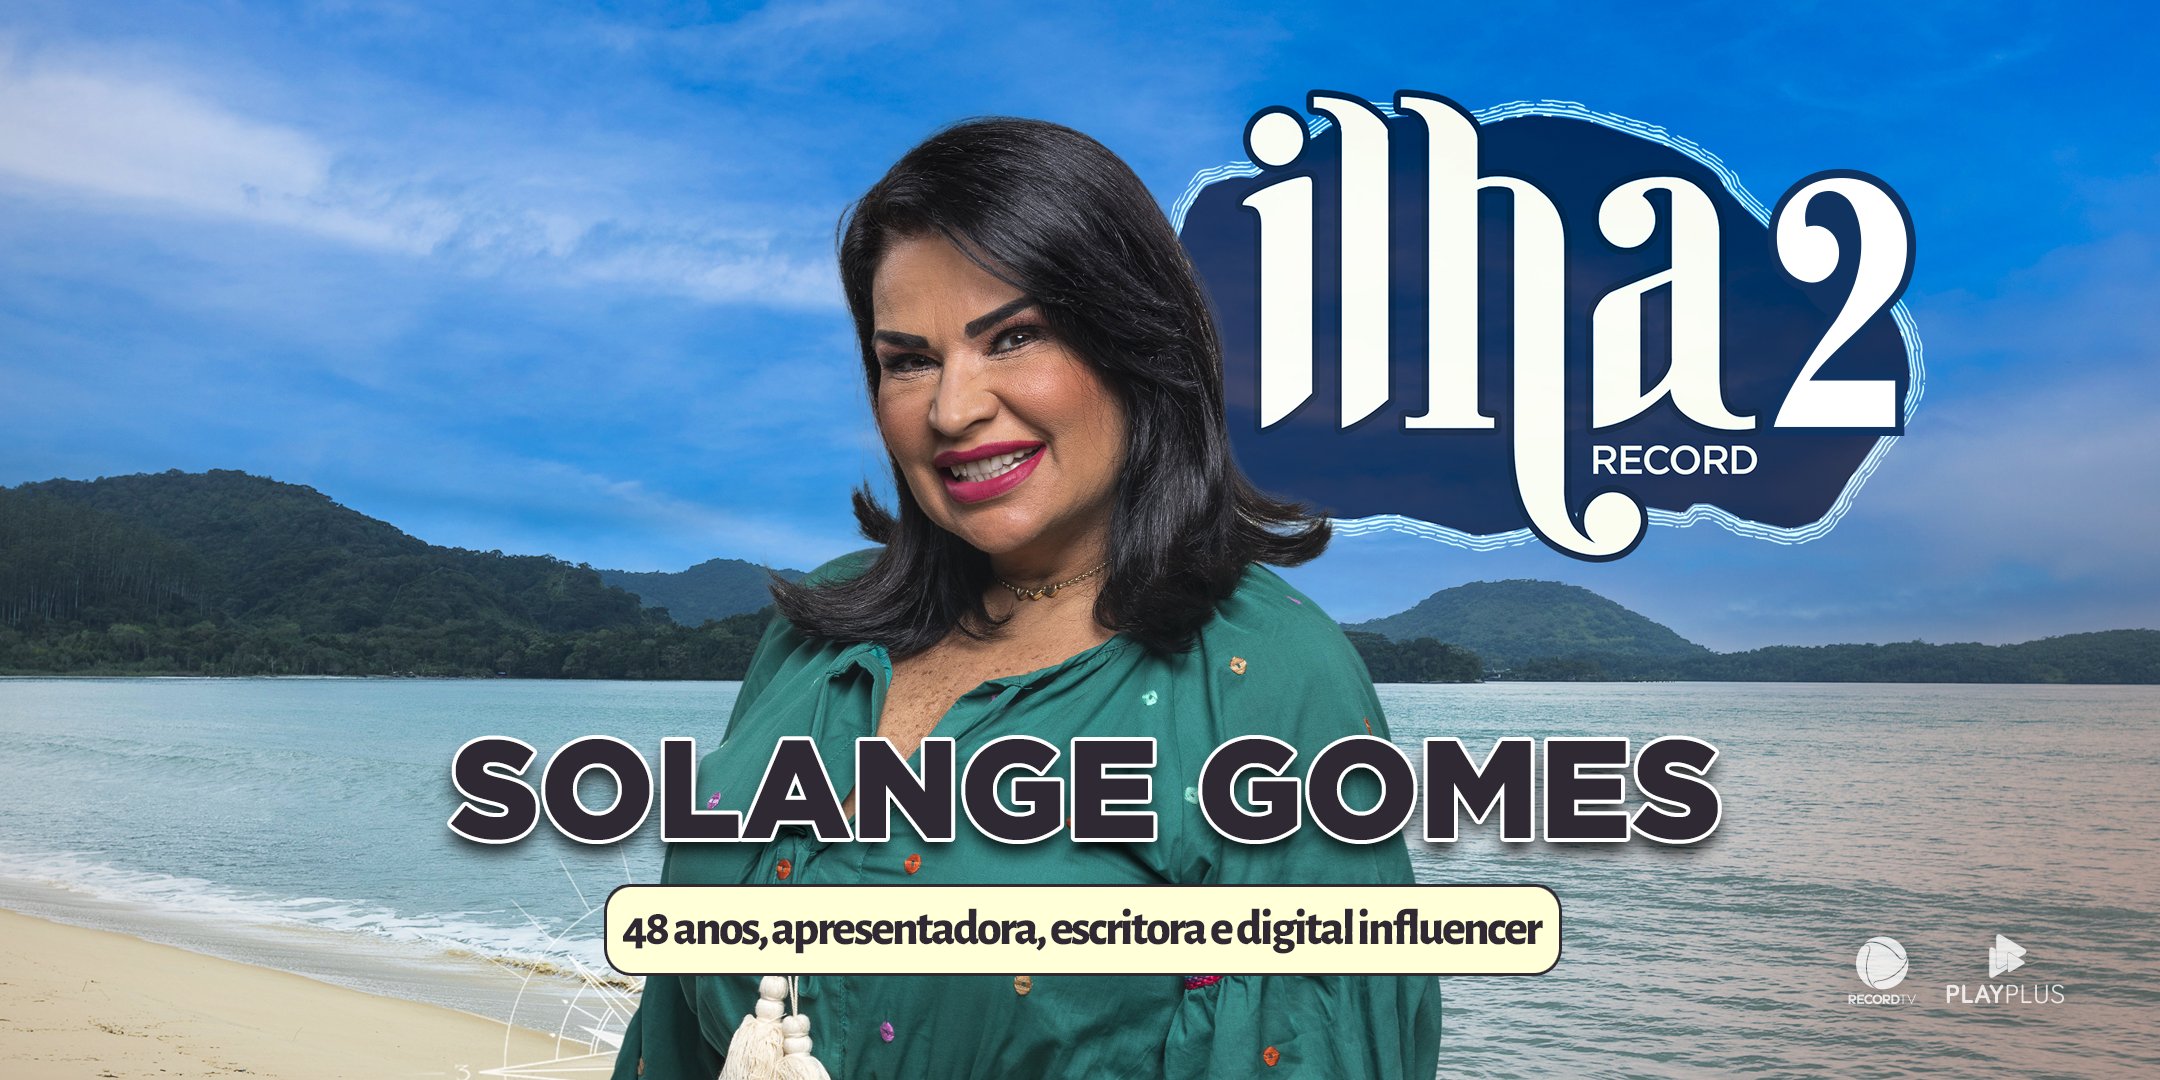 Solange Gomes é uma das participantes confirmados no reality - Imagem: Reprodução/Twitter oficial do Ilha Record